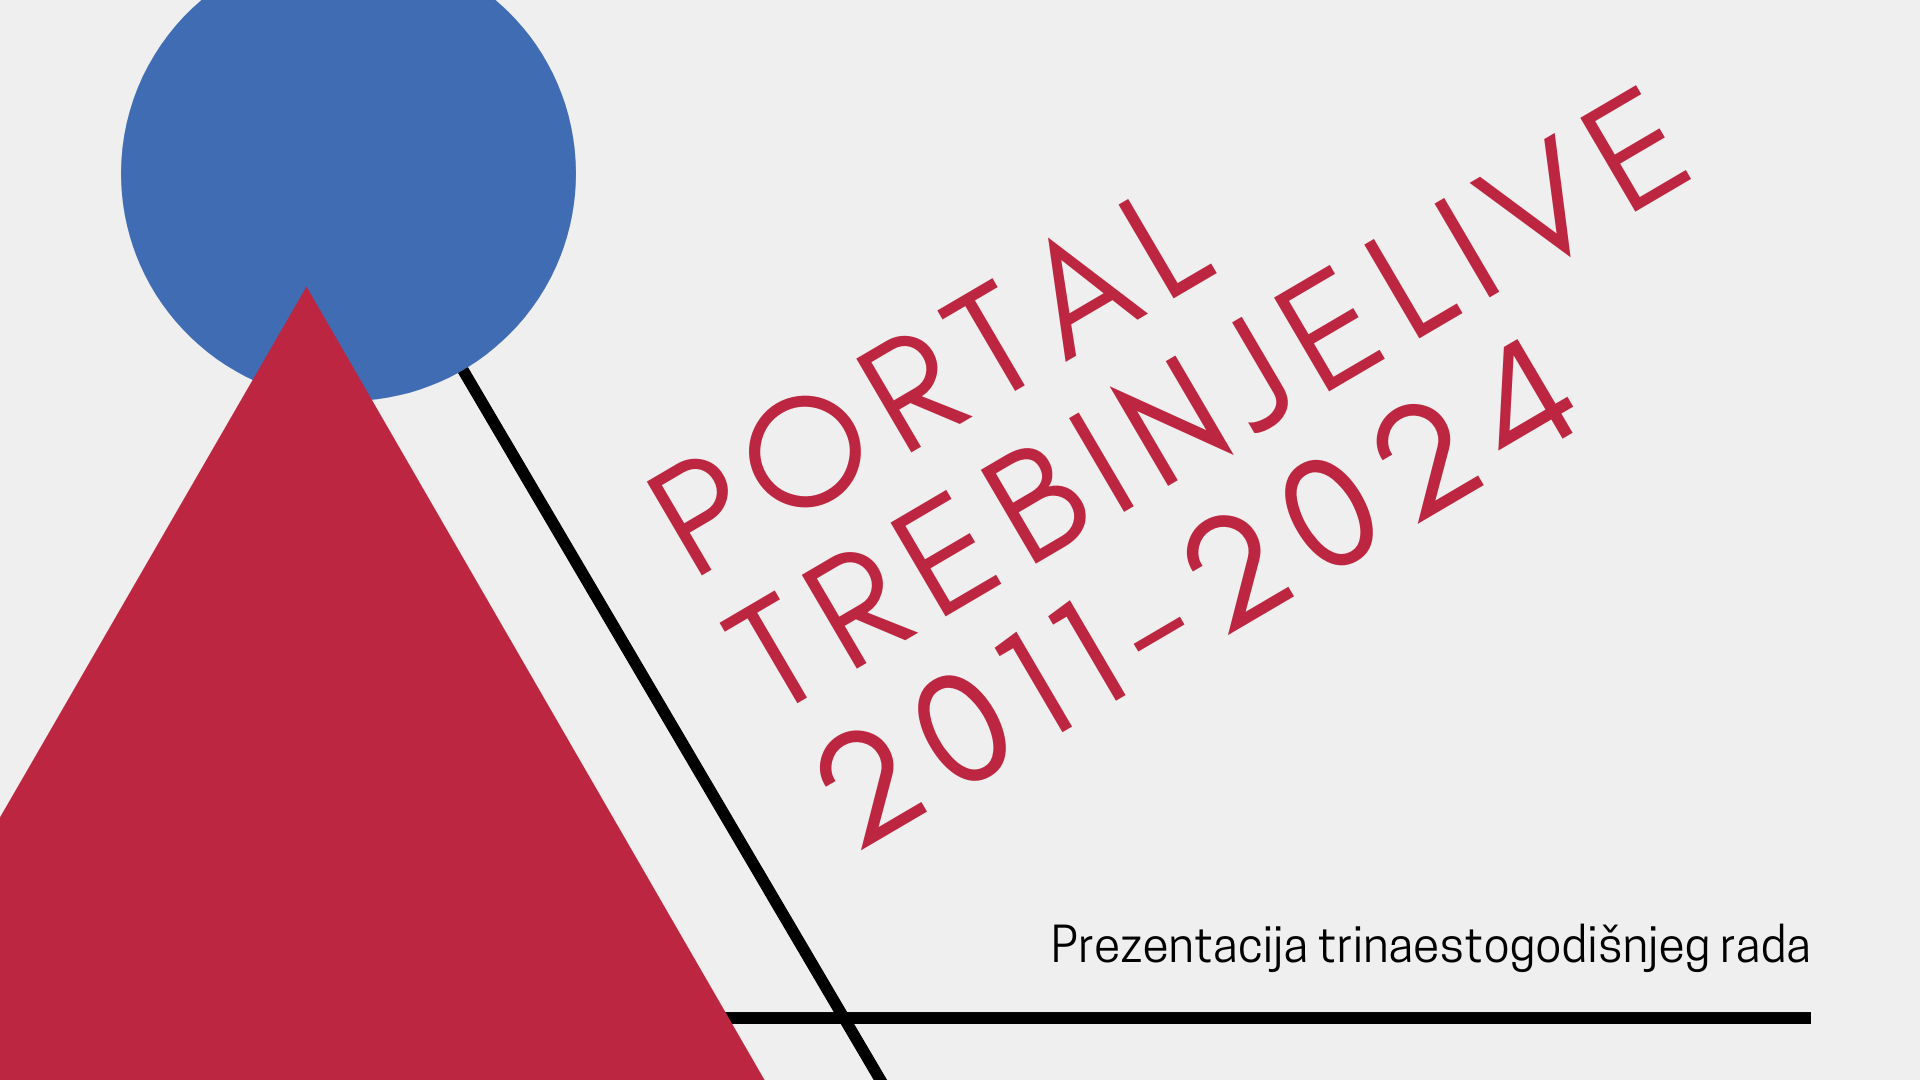 Osam godina portala TREBINJELIVE-min.png